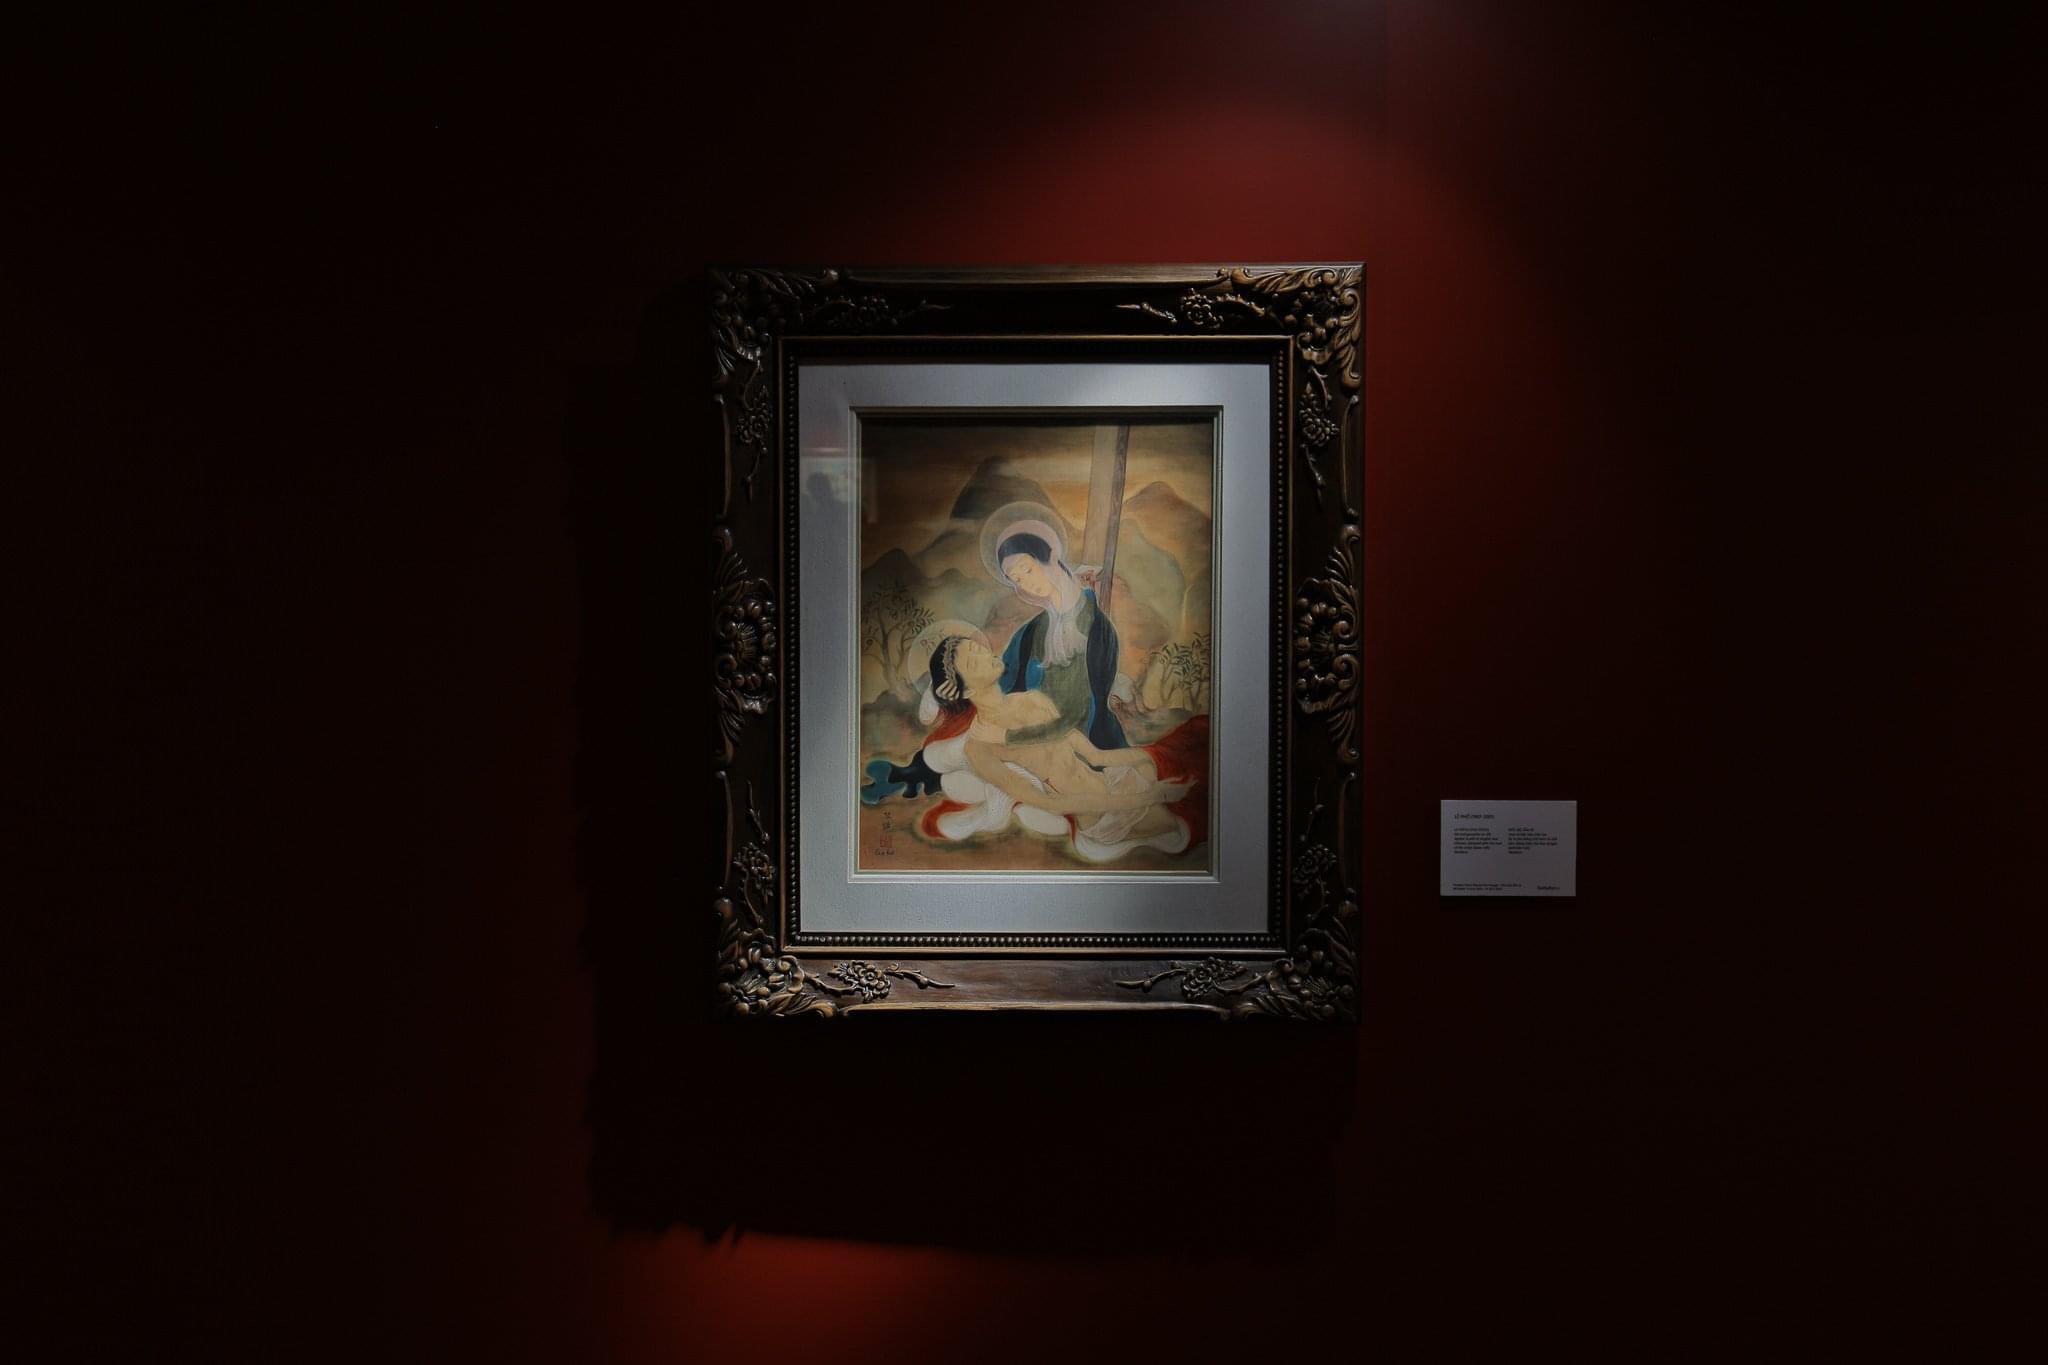 Harpers Bazaar trien lam tranh Sothebys Tu kiet Dong Duong 04 - Sotheby’s triển lãm tranh “Tứ kiệt Đông Dương” Phổ-Thứ-Lựu-Đàm lớn nhất Việt Nam